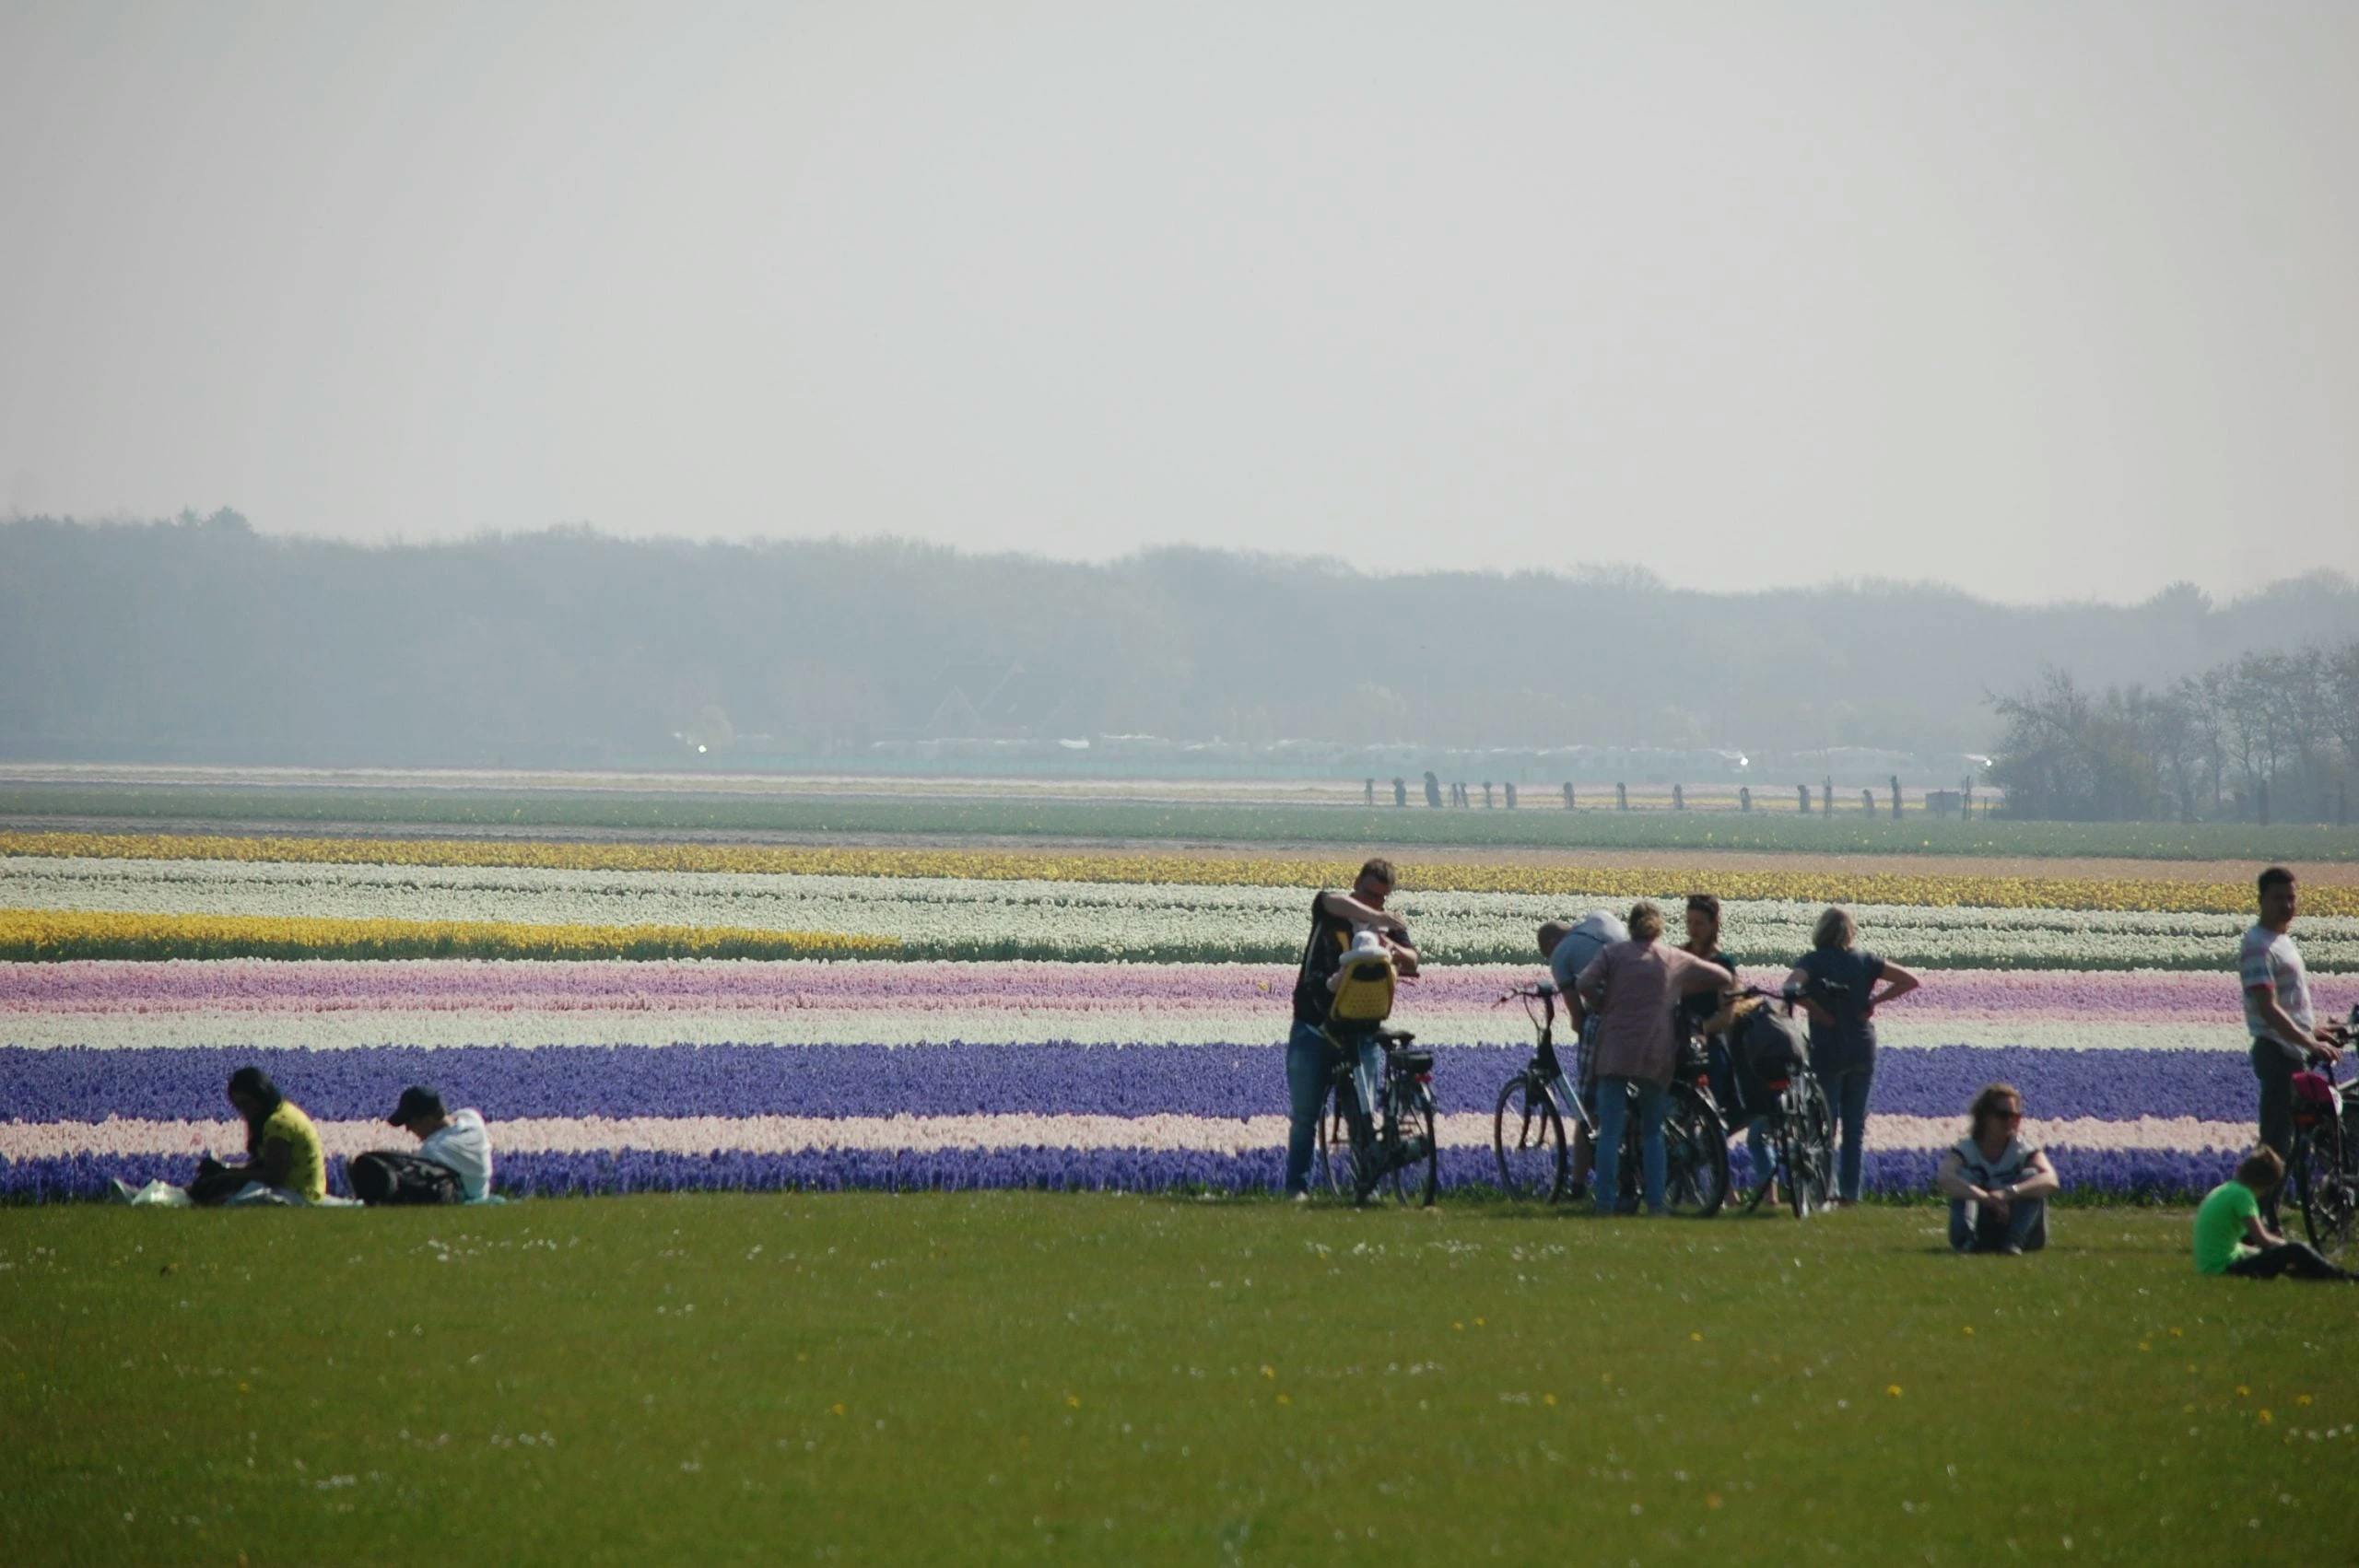 in-bici-tra-i-campi-di-tulipani